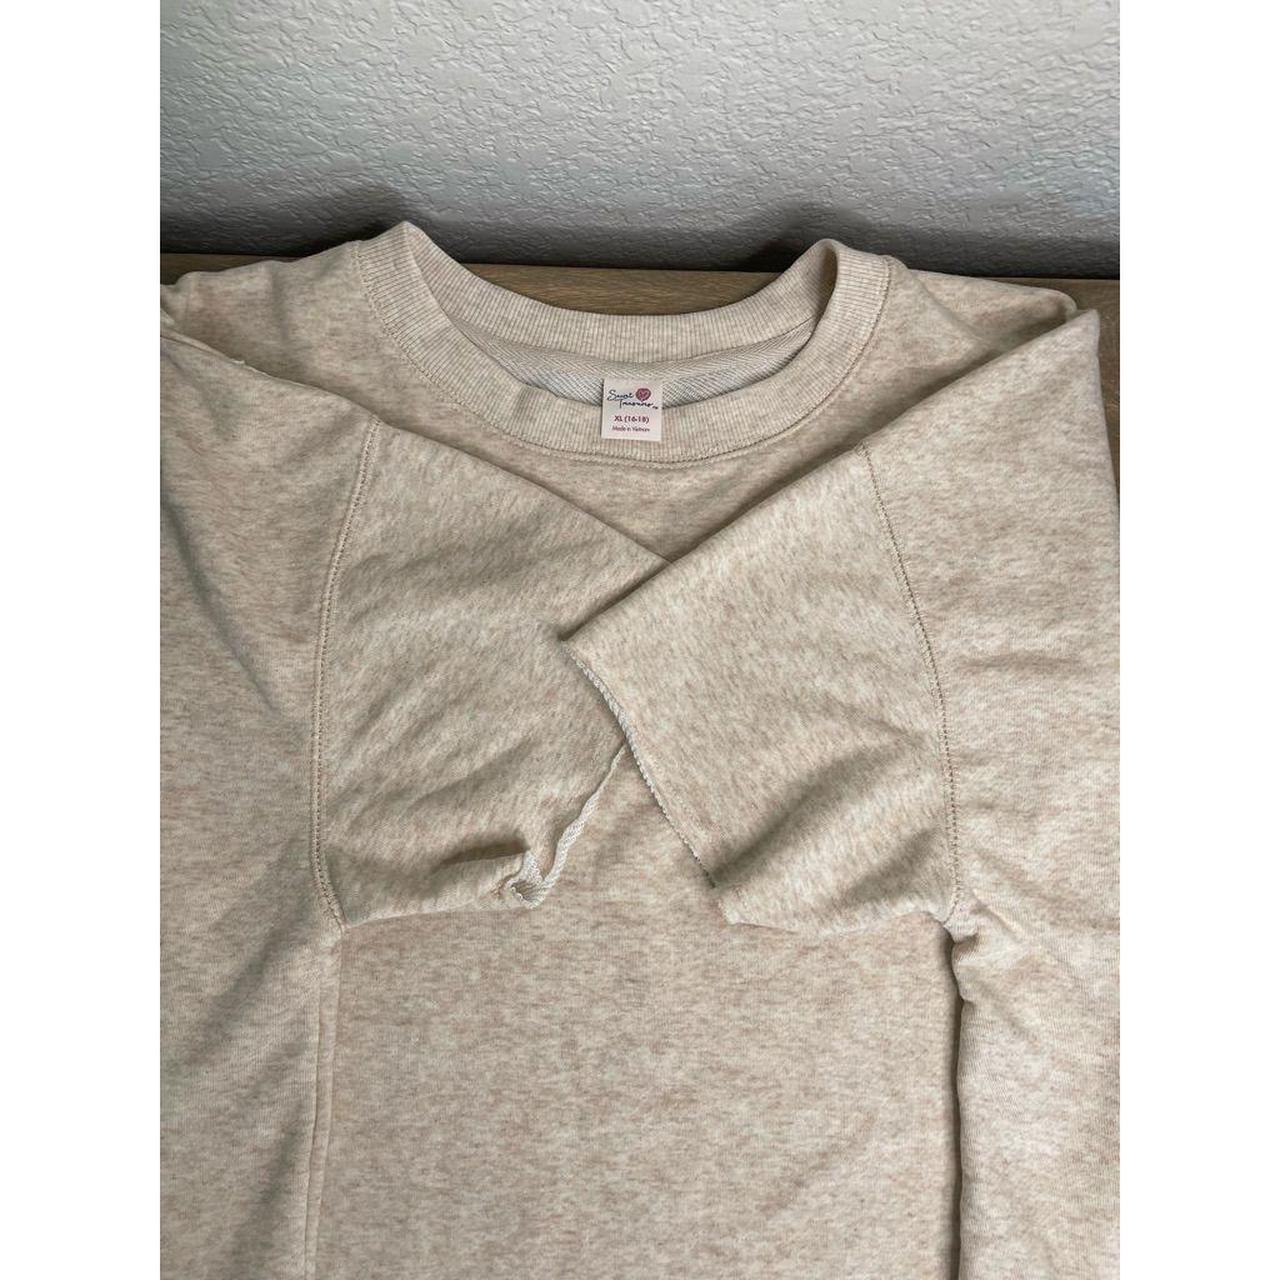 Product Image 3 - Cropped Short Sleeve Sweatshirt, Cream